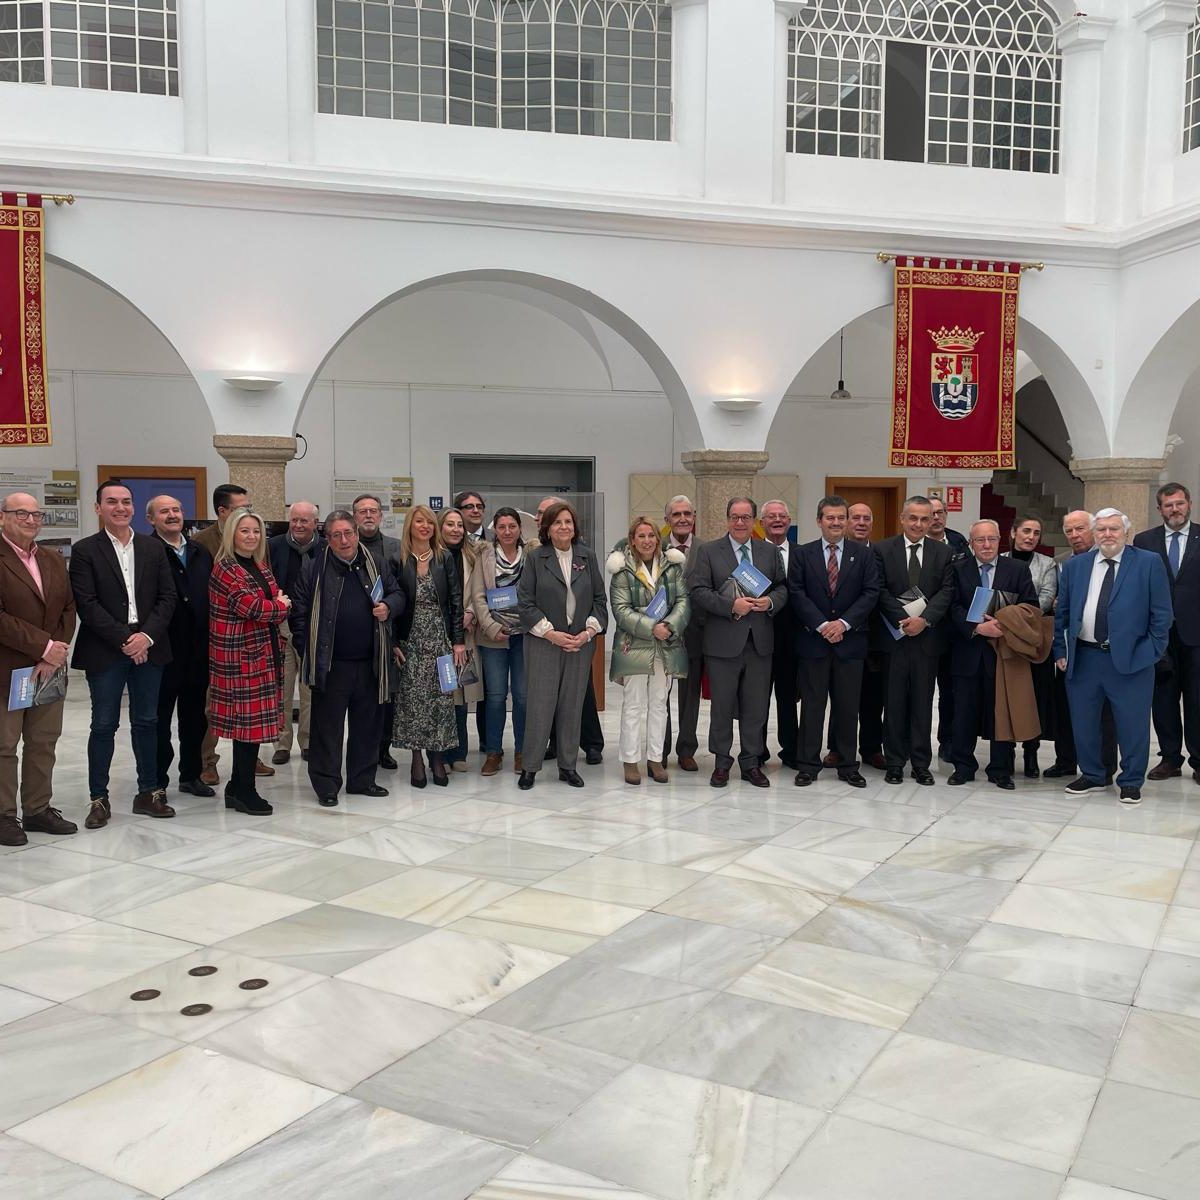 Hemos estado presentes en la Asamblea de Extremadura, en una sesión del Club Senior para conmemorar el cierre del 40° Aniversario del Estatuto de Autonomía de Extremadura.